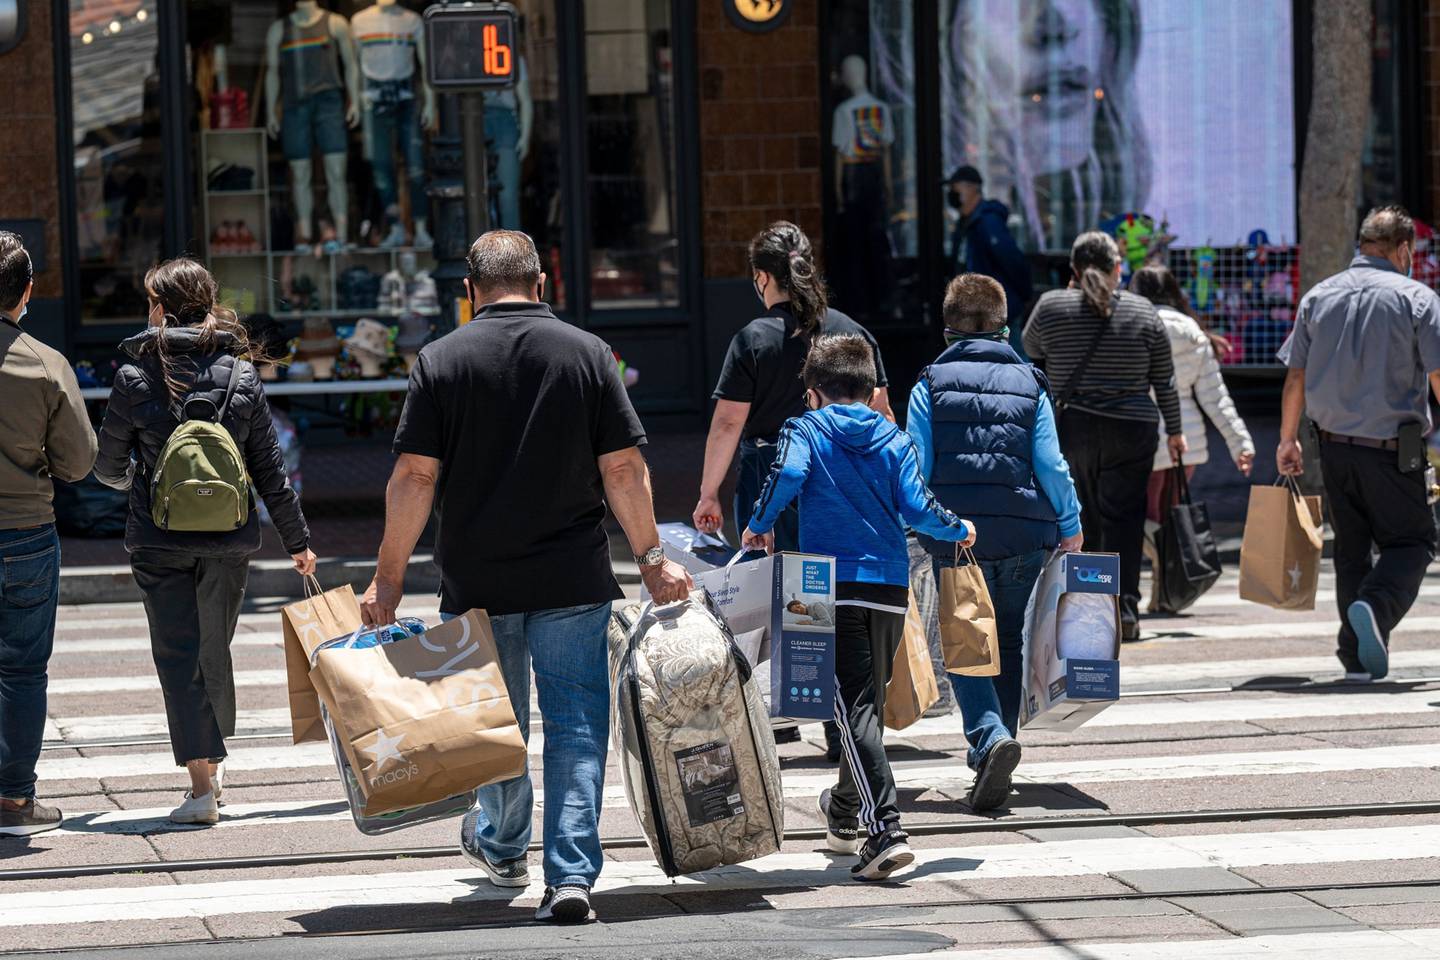 Personas llevan bolsas de compra en San Francisco, California, el jueves 10 de junio de 2021. Los precios pagados por los consumidores estadounidenses subieron en mayo más de lo previsto, extendiendo una acumulación de inflación de meses que corre el riesgo de afianzarse a medida que la economía se fortalece.